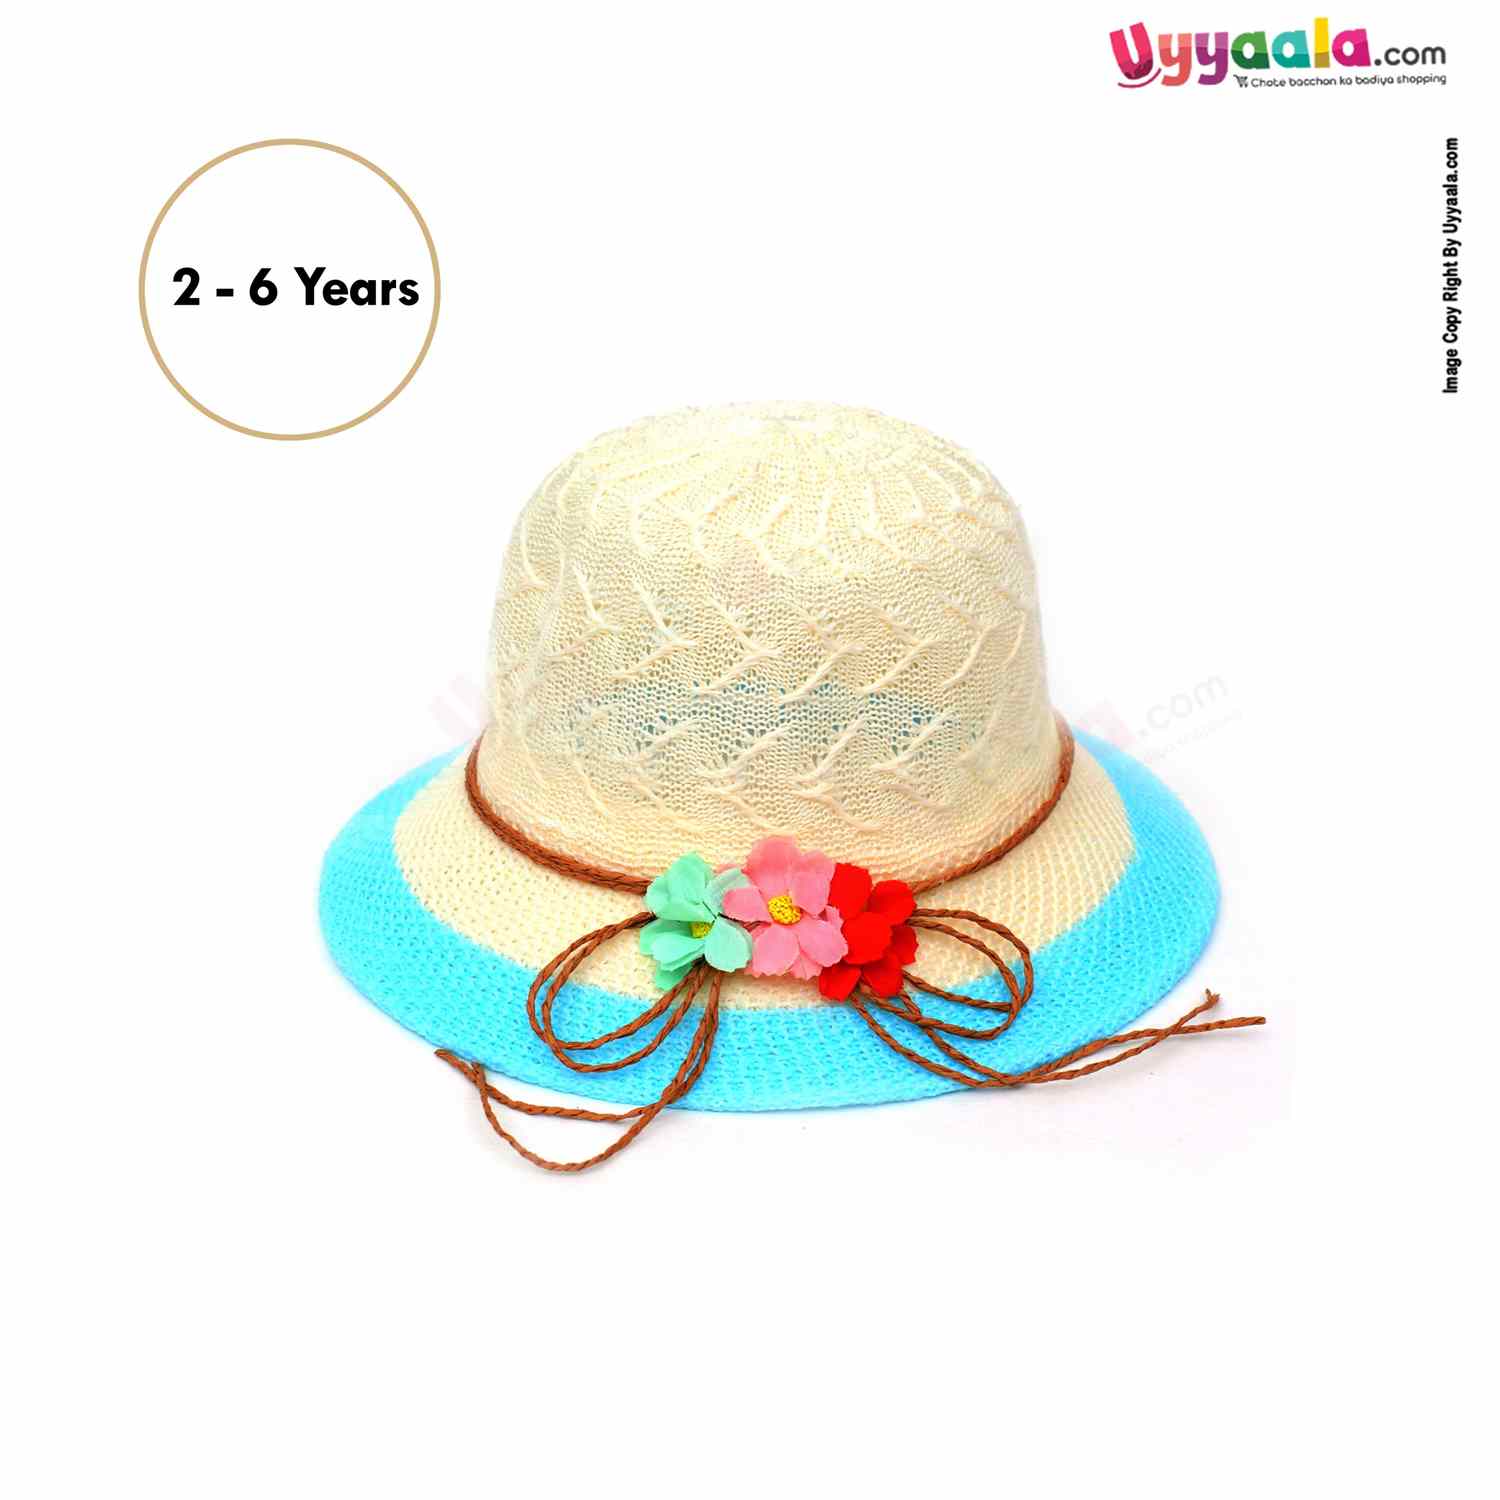 Fashion Round Net Hat for Kids 2+Y Age, Cream, Blue